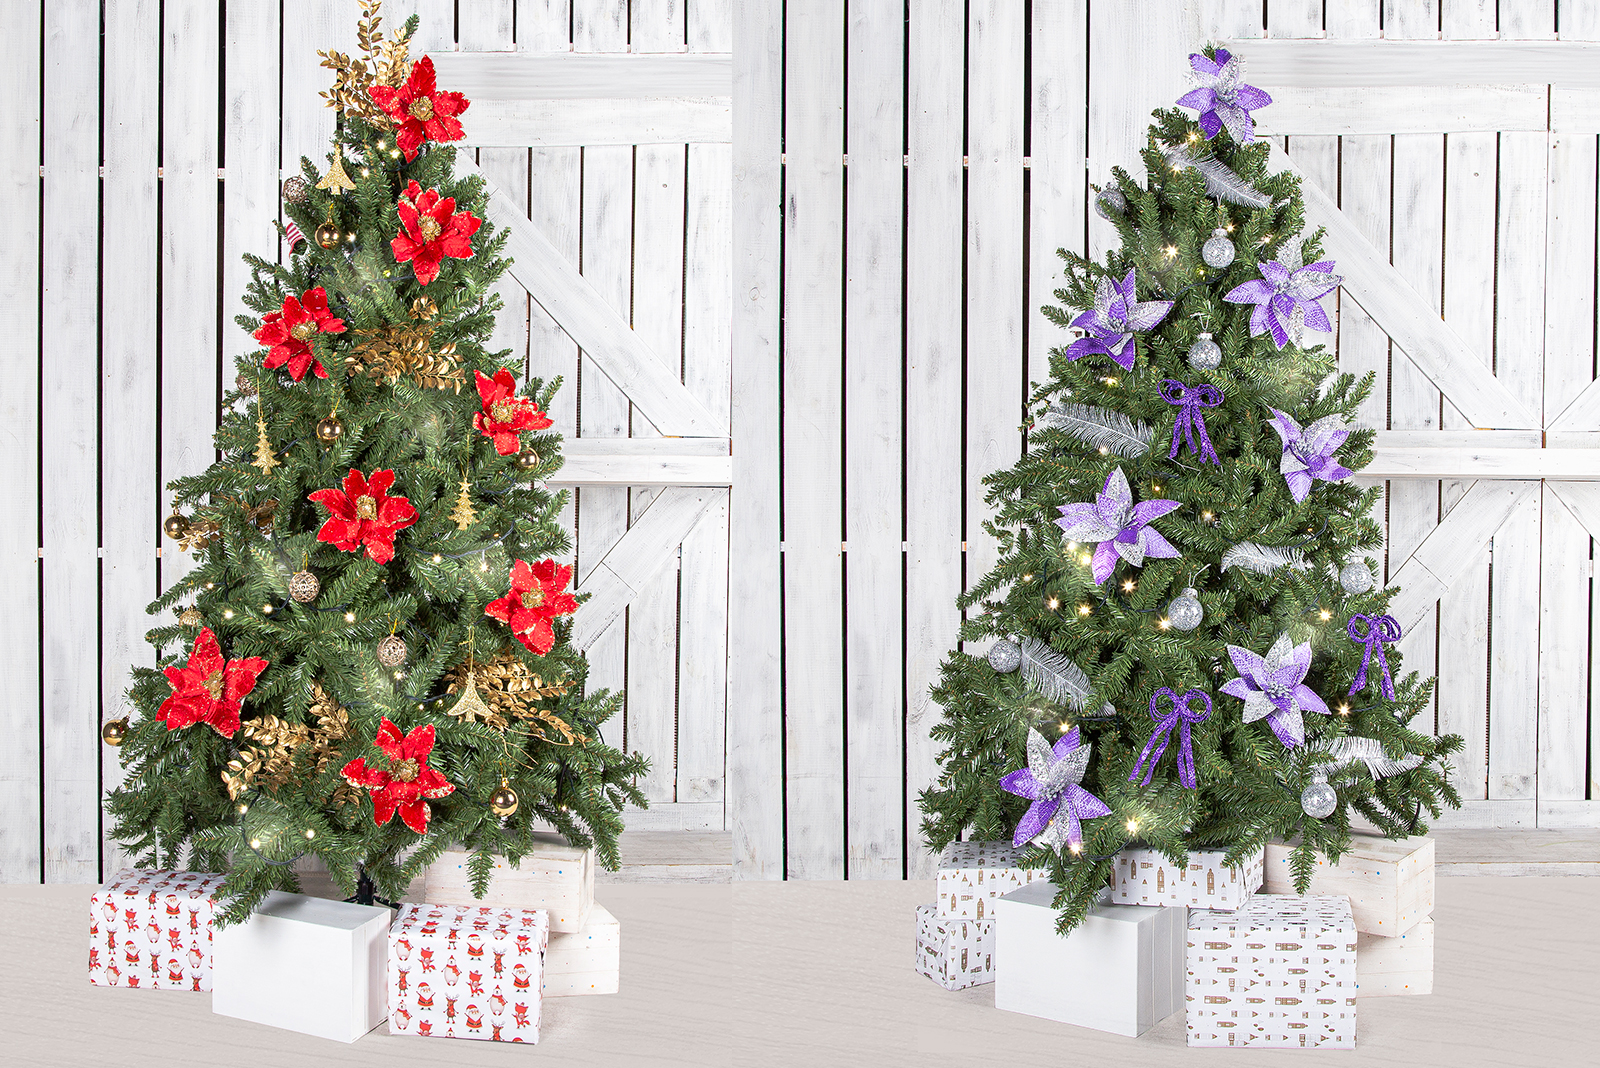 Cómo decorar el Árbol de Navidad en 5 pasos por Alparamis - Blog